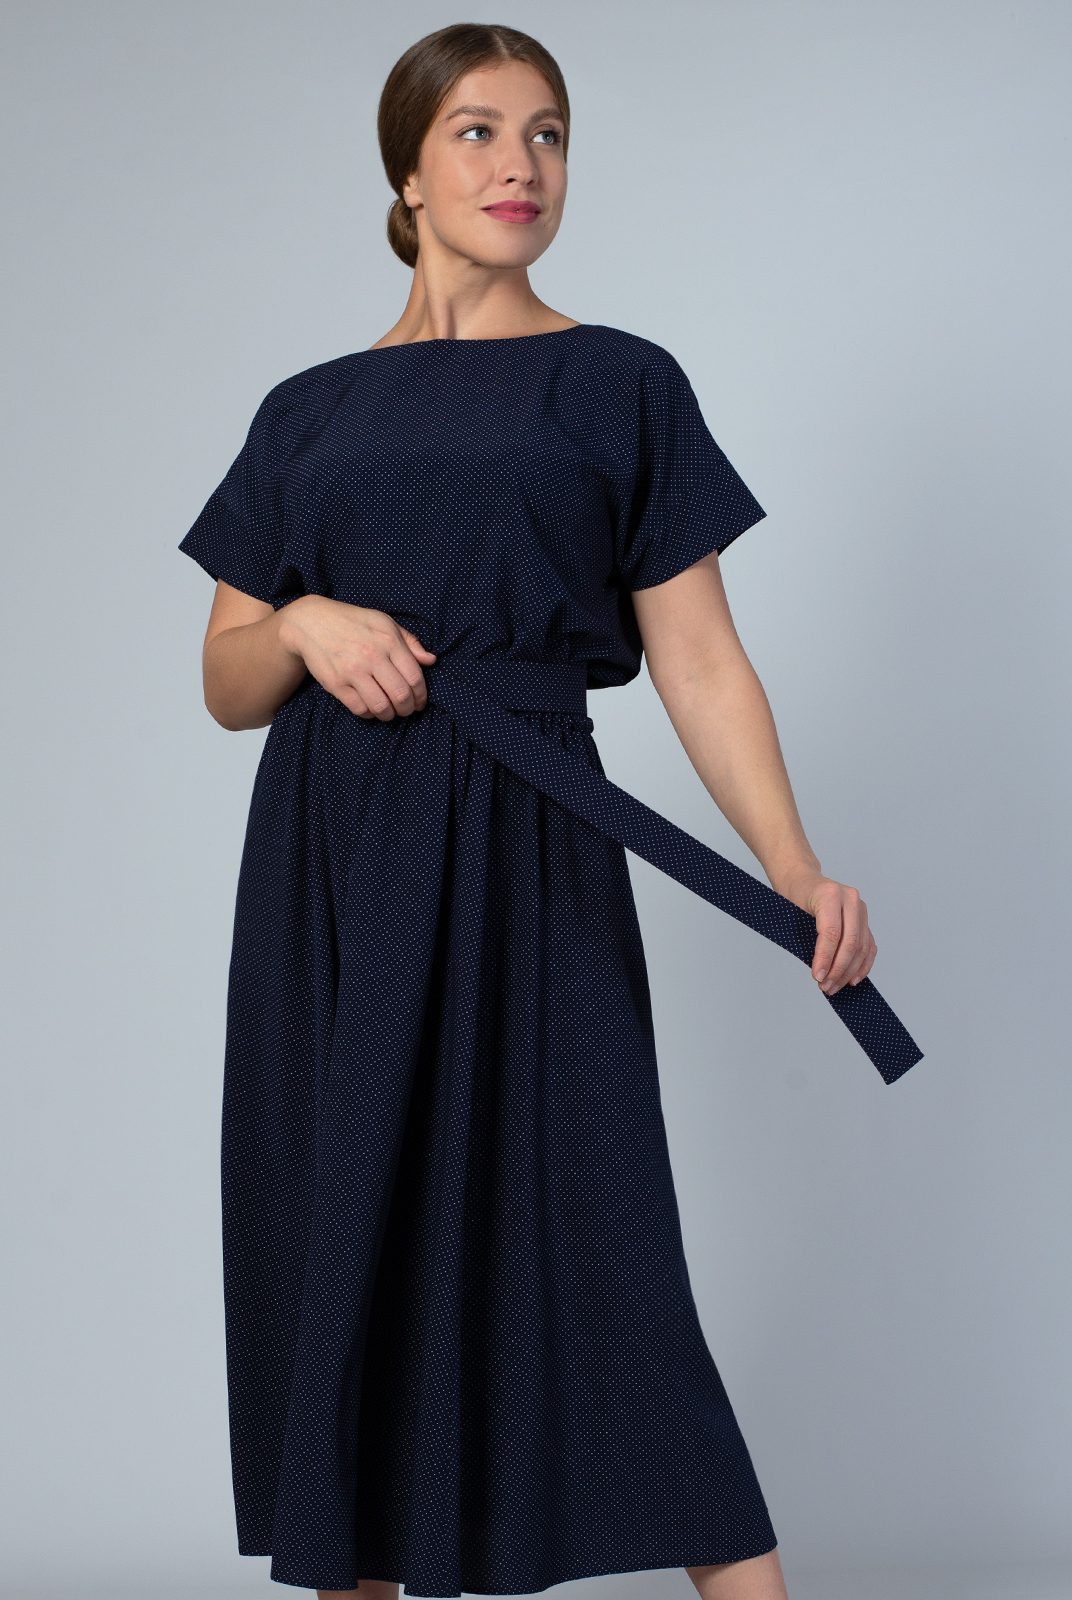 Платье женское Mila Bezgerts 3989зп синее 50 RU